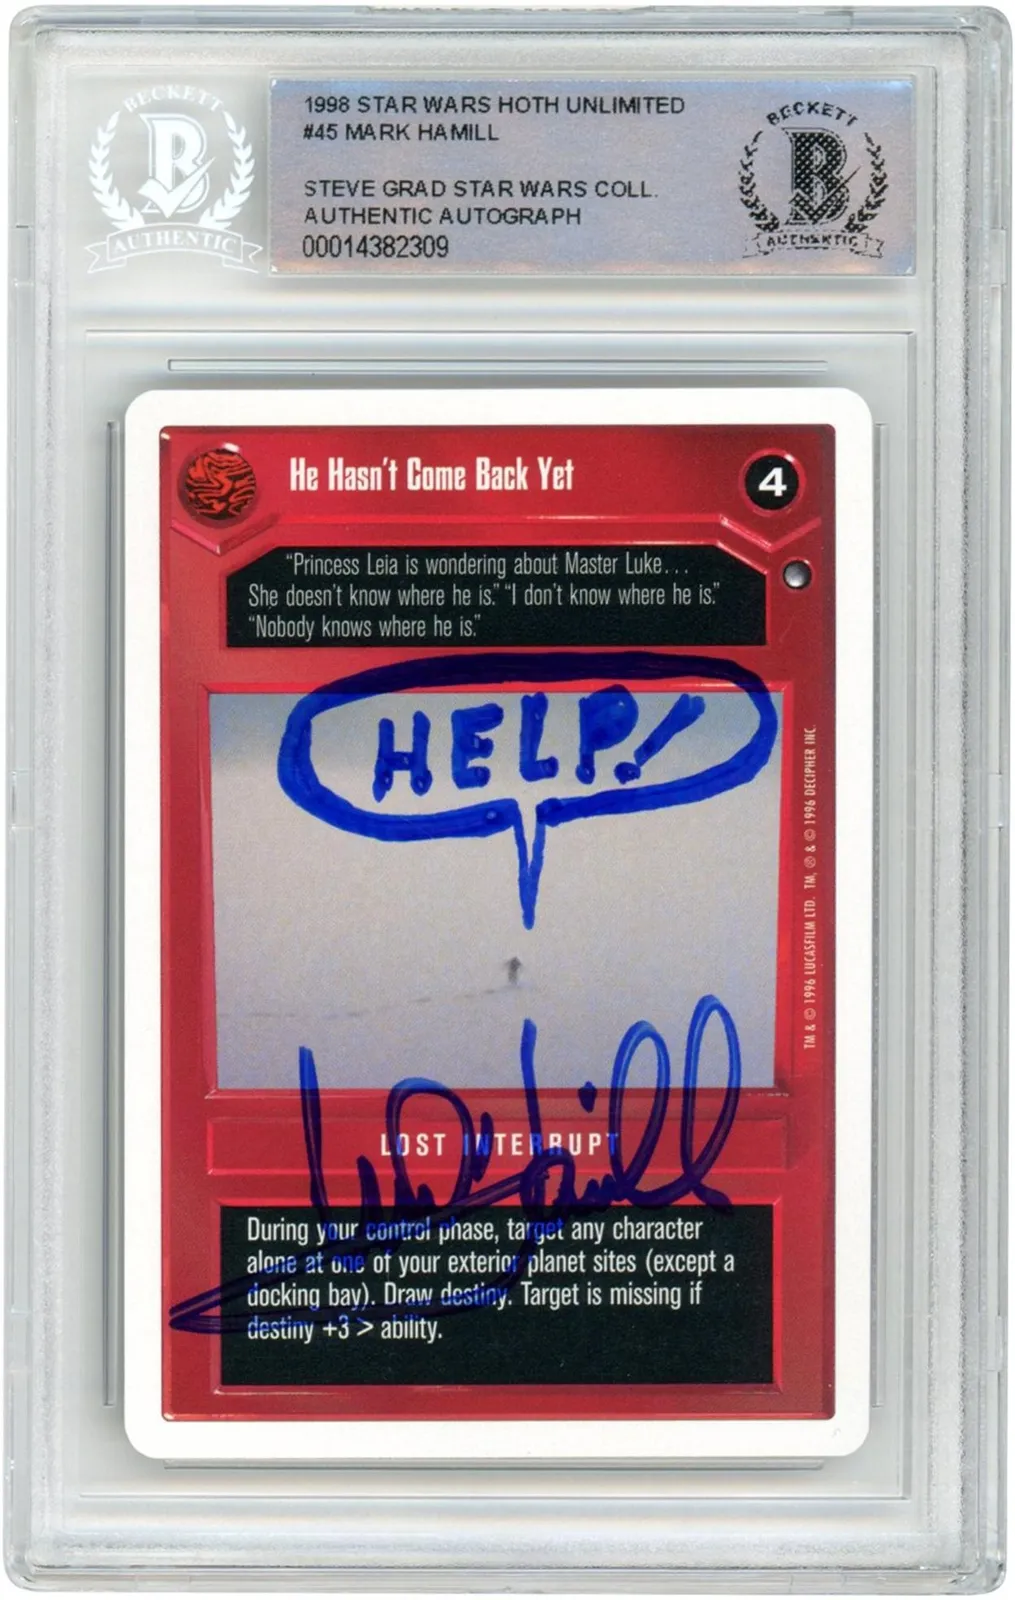 Mark Hamill Star Wars Trading Card Item#12304699